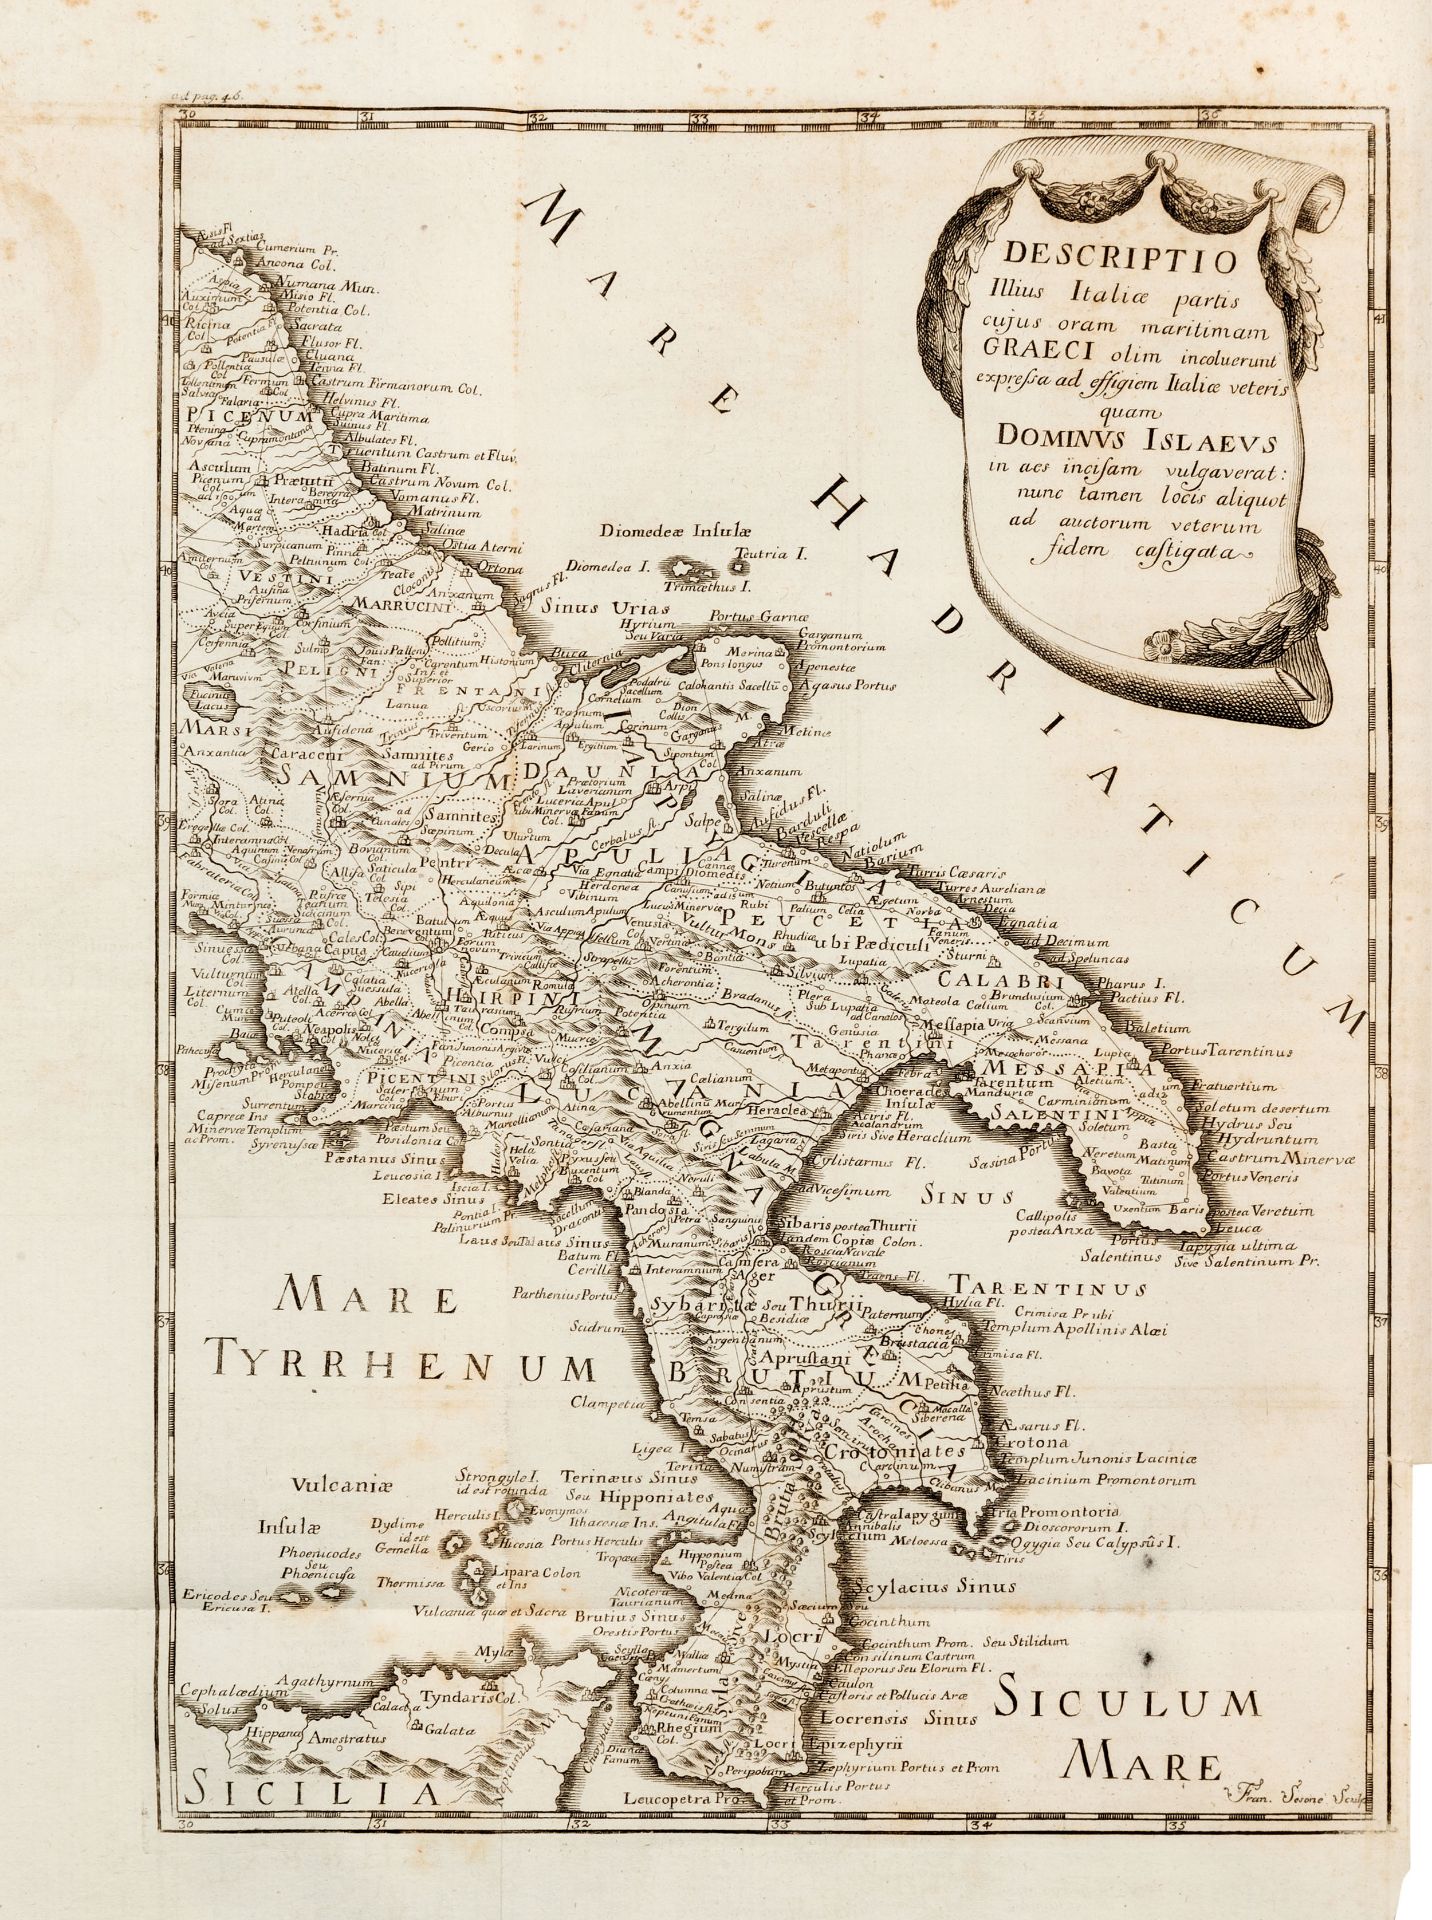 MAZZOCCHI, Alessio Simmaco (1684-1771). Commentariorum in regii herculanensis musei aeneas tabulas